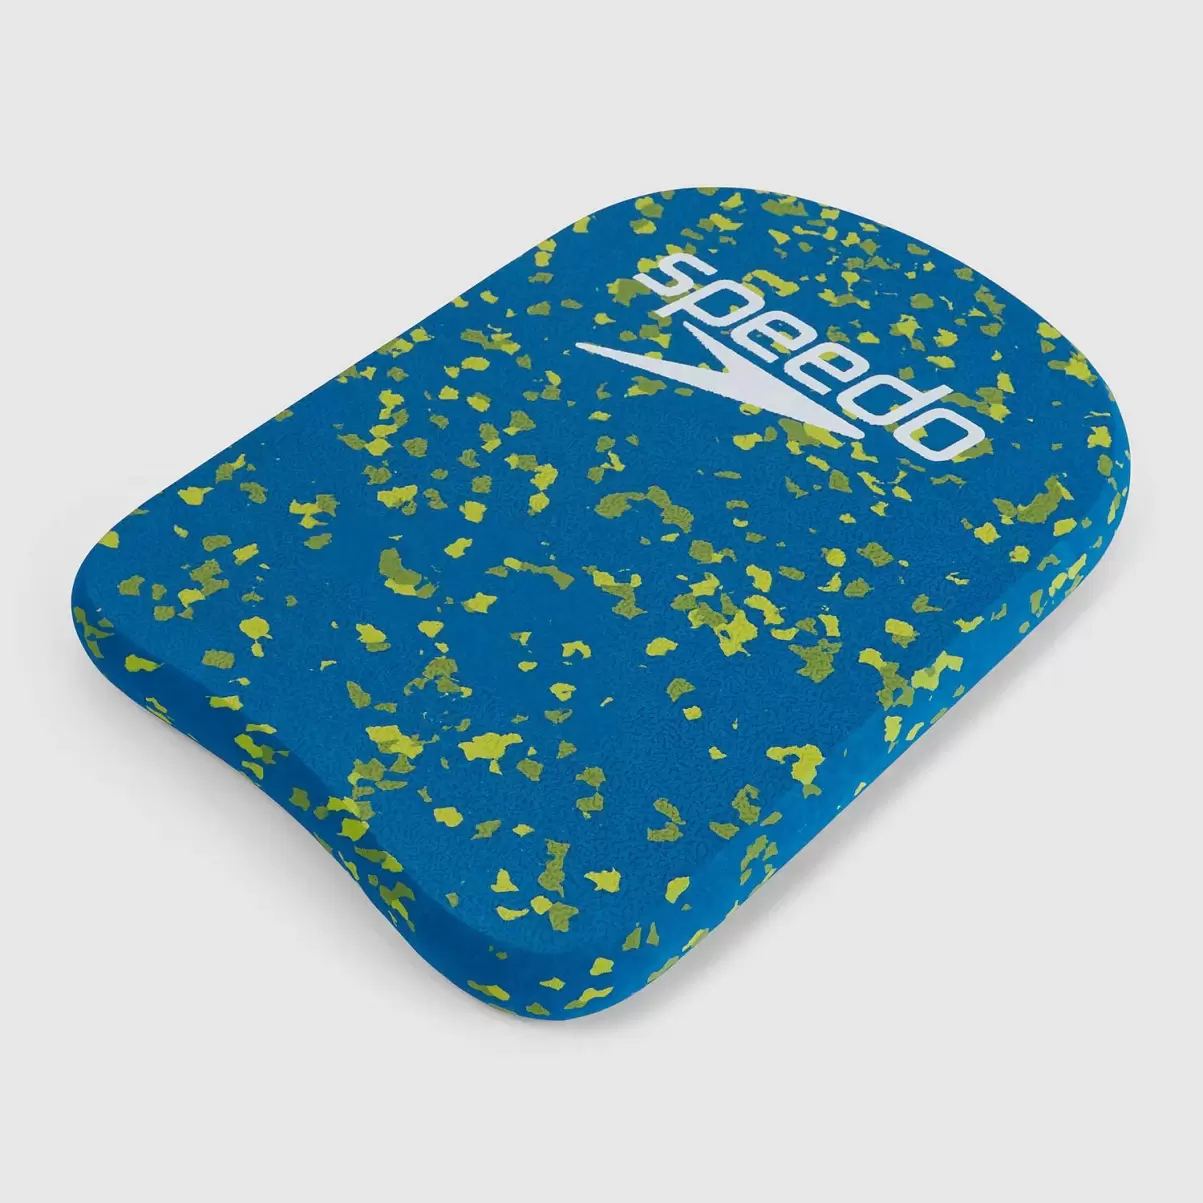 Speedo Damen Bloom Kickboard Blau/Grün Schwimm Accessoires - 1